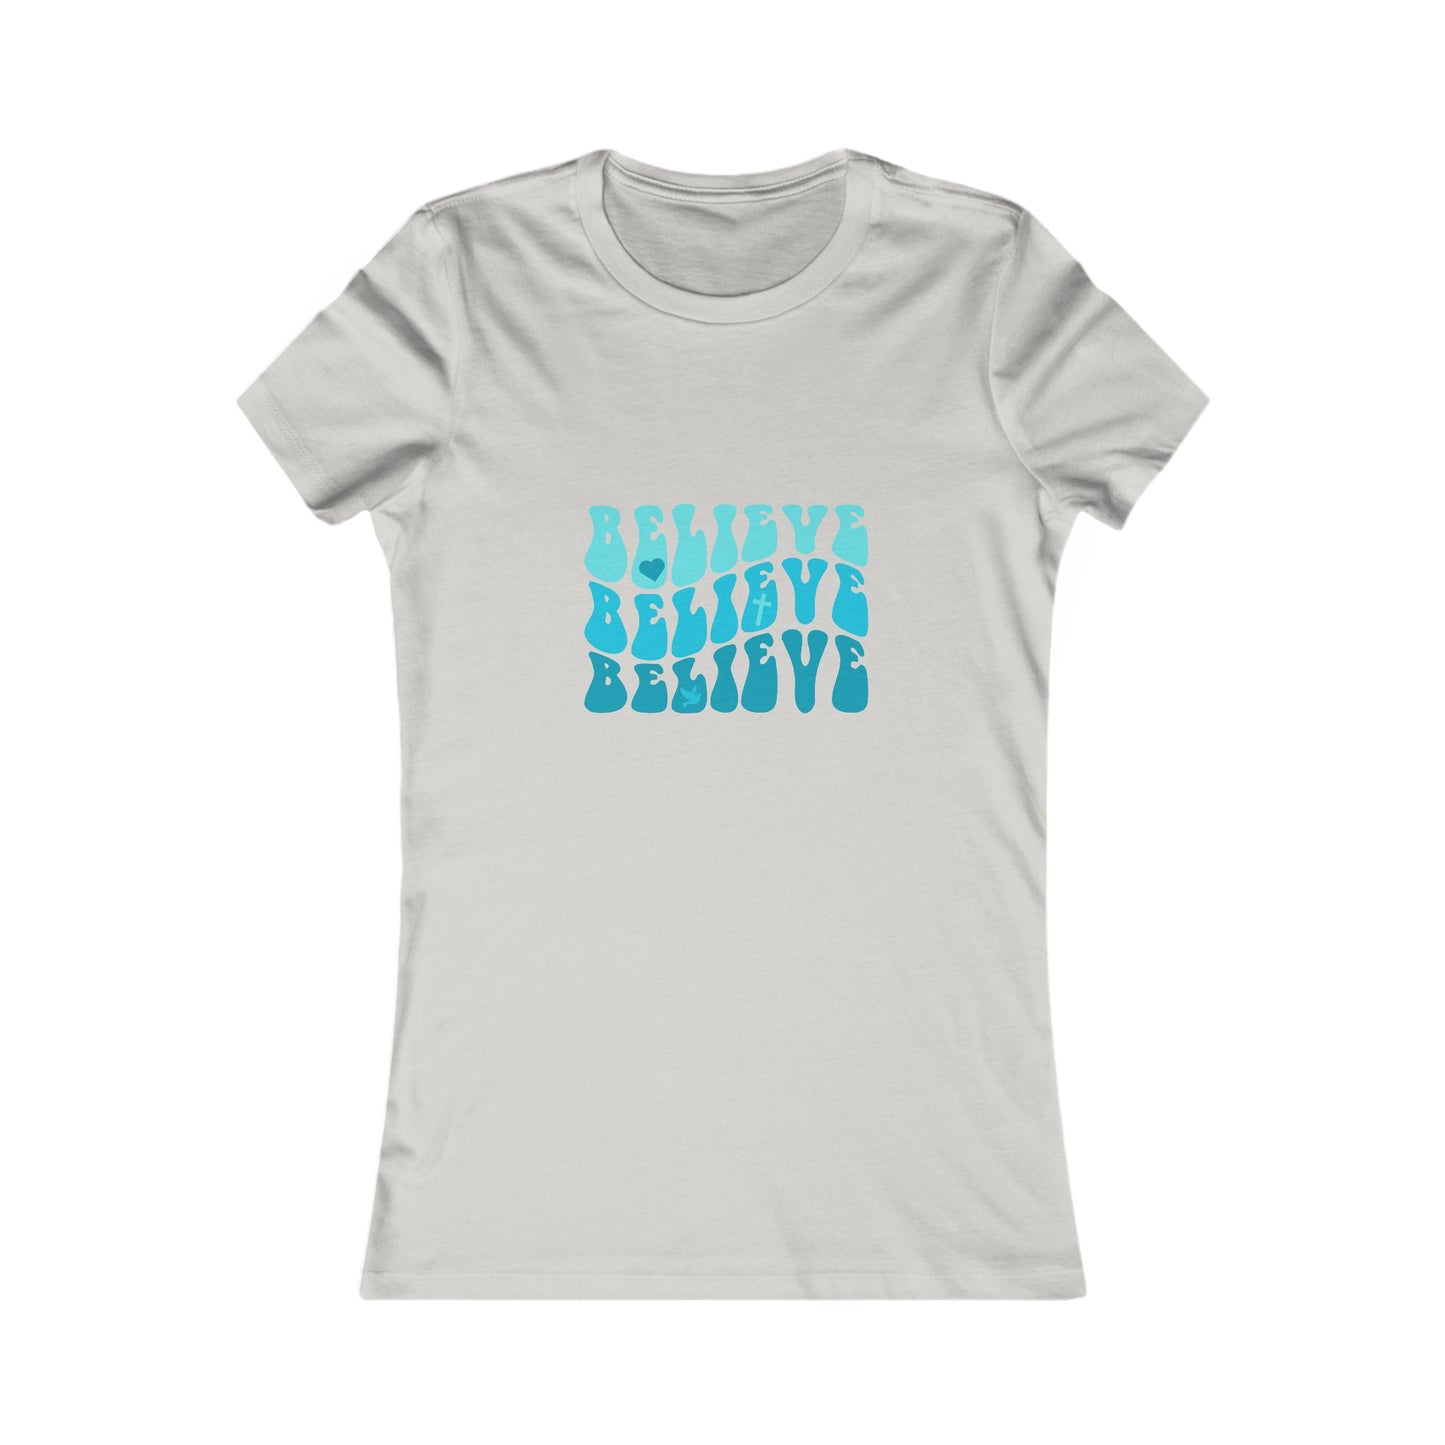 Believe Women's Tshirt (Teal Logo)